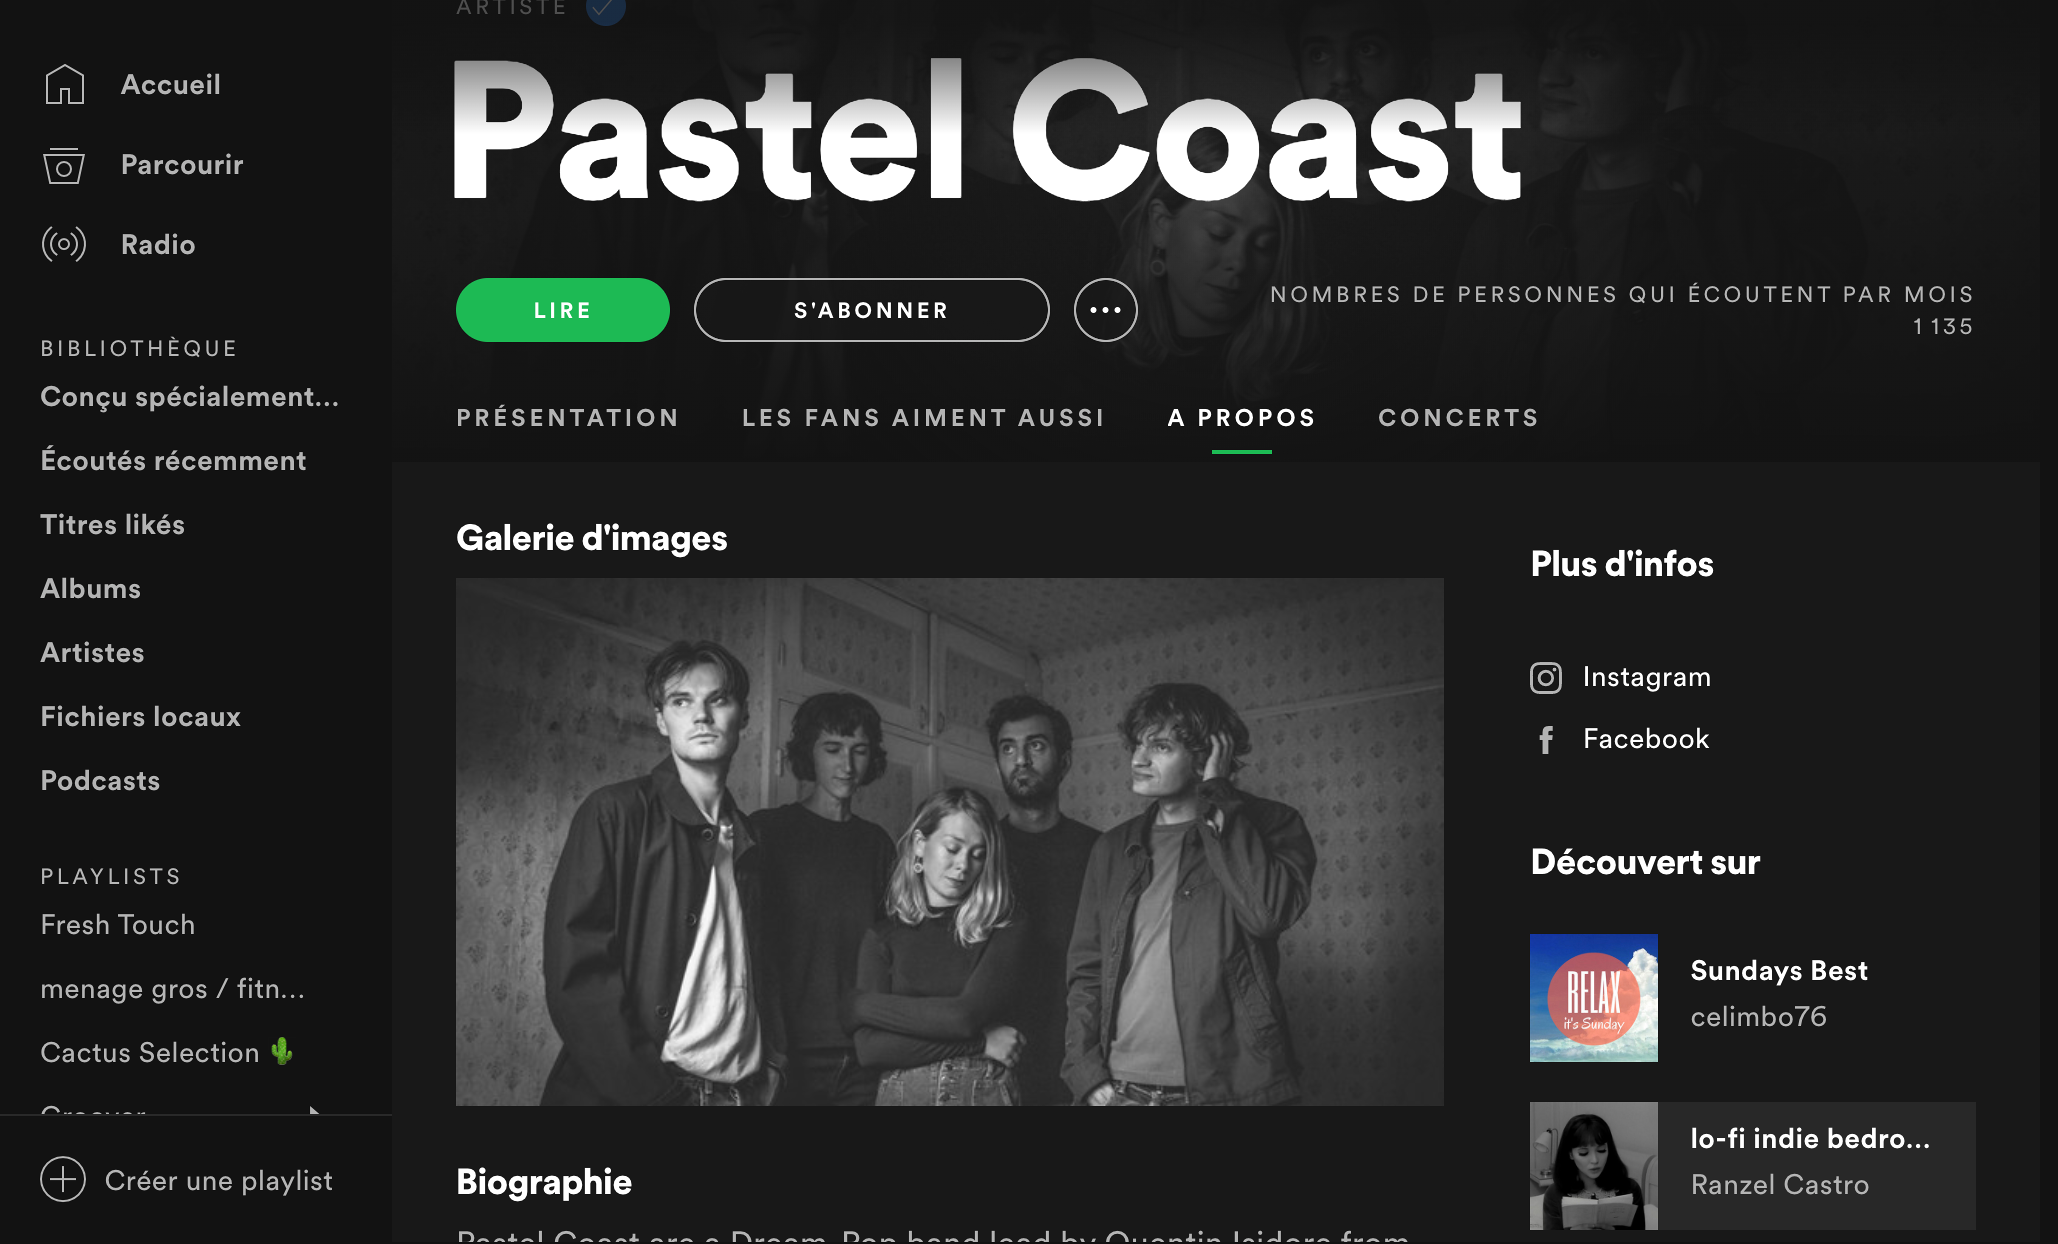 Exemplos de listas de reprodução do Spotify nas quais apareceram Pastel Coast